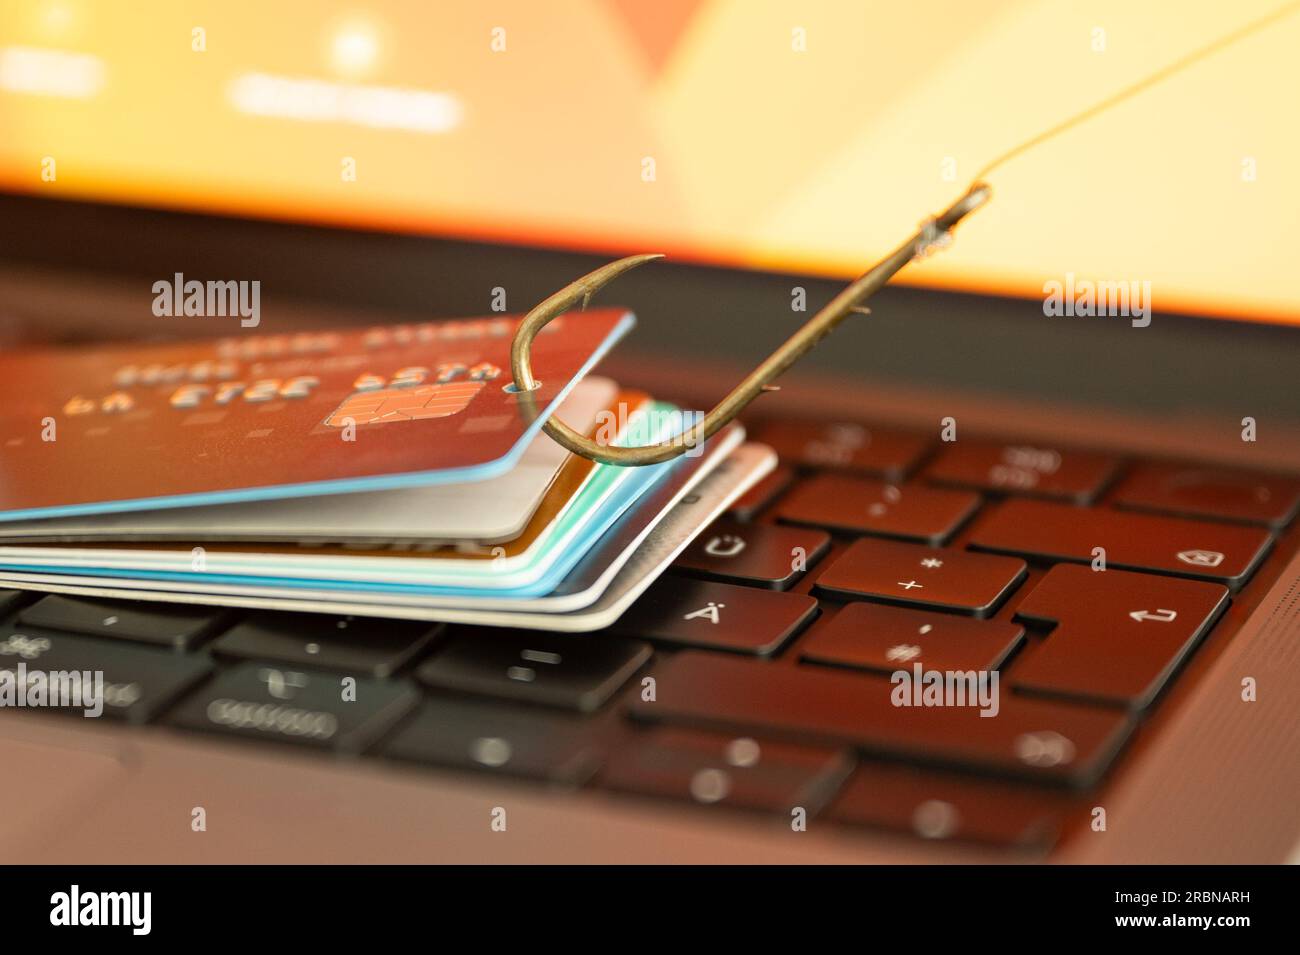 Visualisierung von Phishing und Online-Betrug durch eine Phishing-Kreditkarte auf einer PC-Tastatur, die an einem Fischerhaken hängt Stockfoto